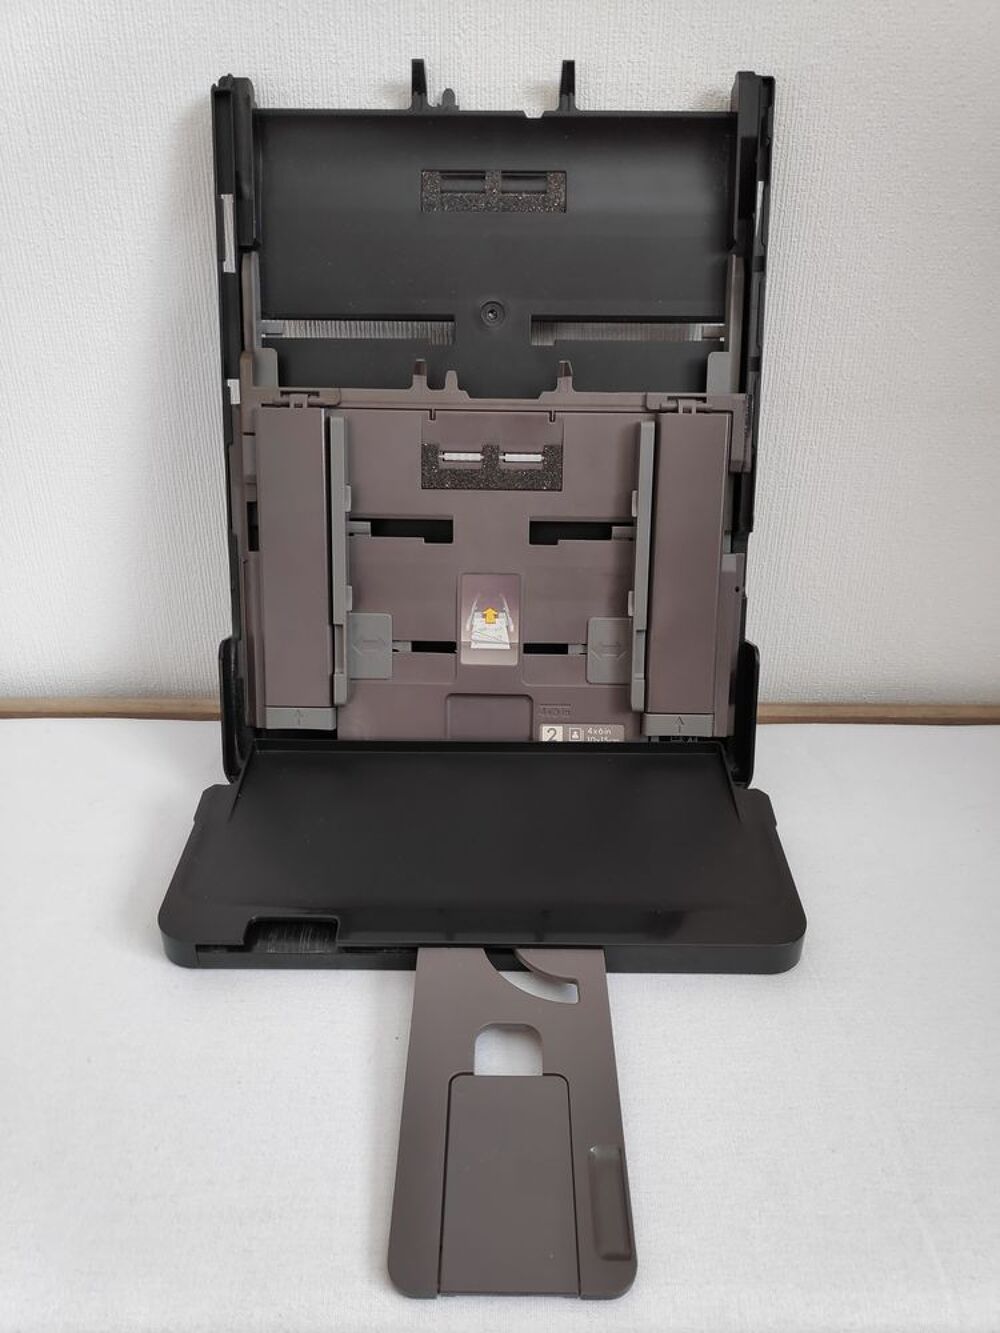 Bac d'alimentation papier pour imprimante HP Photosmart Matriel informatique